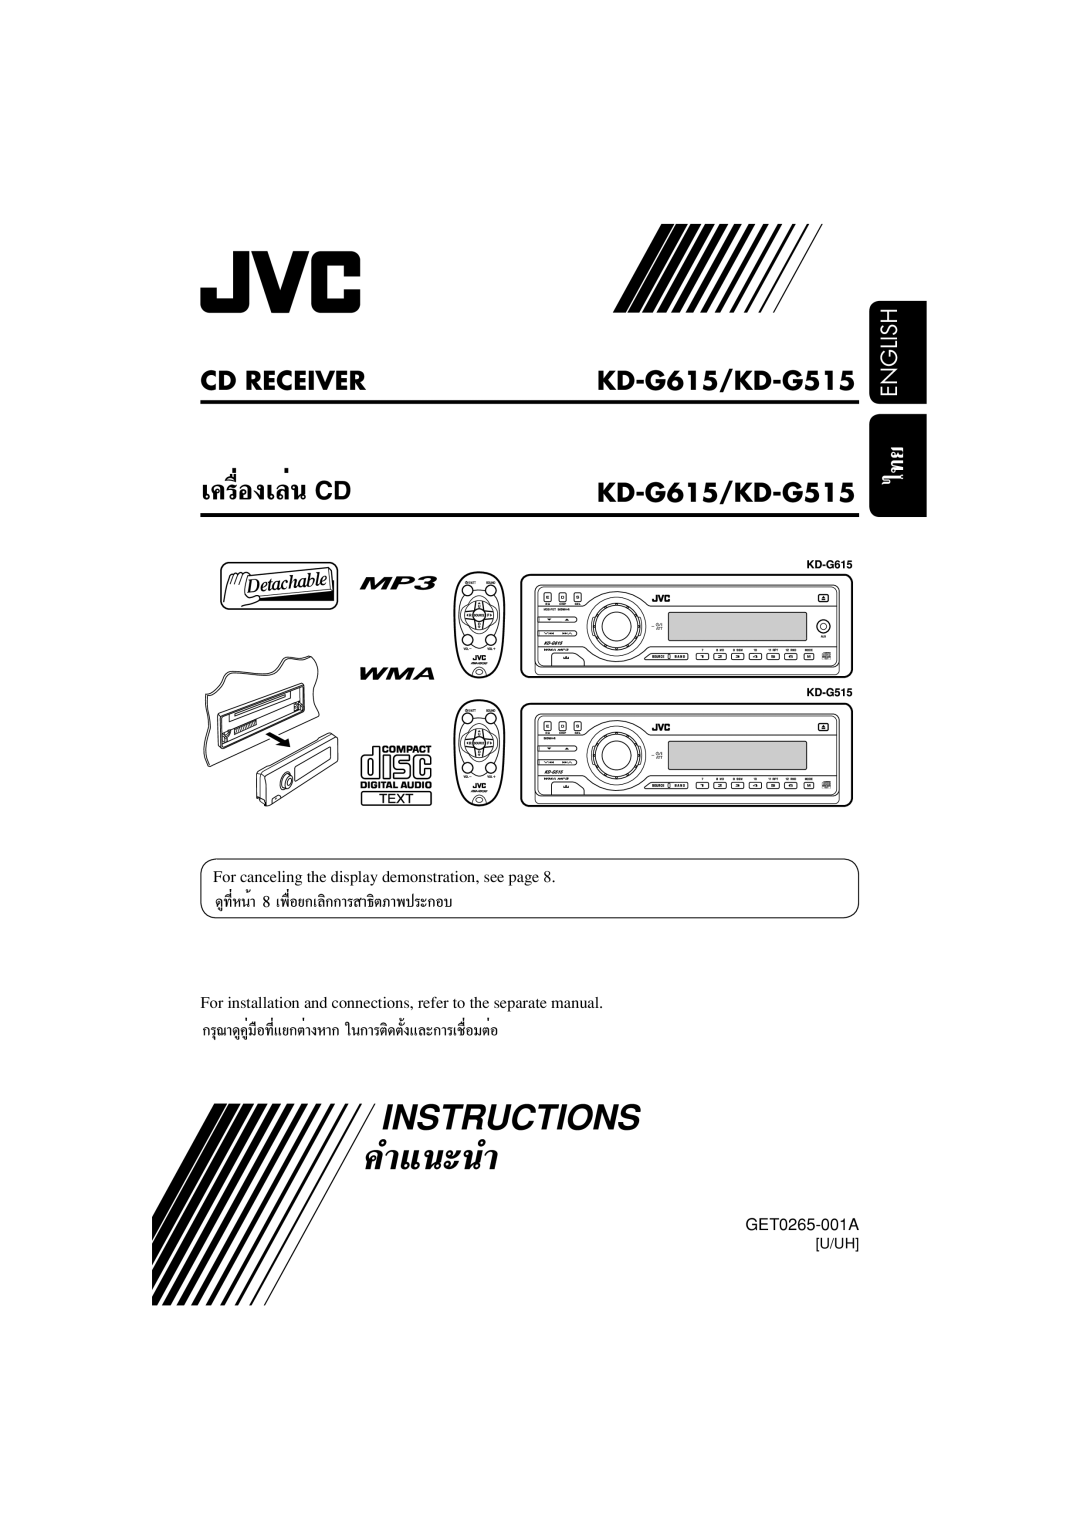 JVC manual Cd Receiver, KD-G615/KD-G515 KD-G615/KD-G515, English, Instructions 